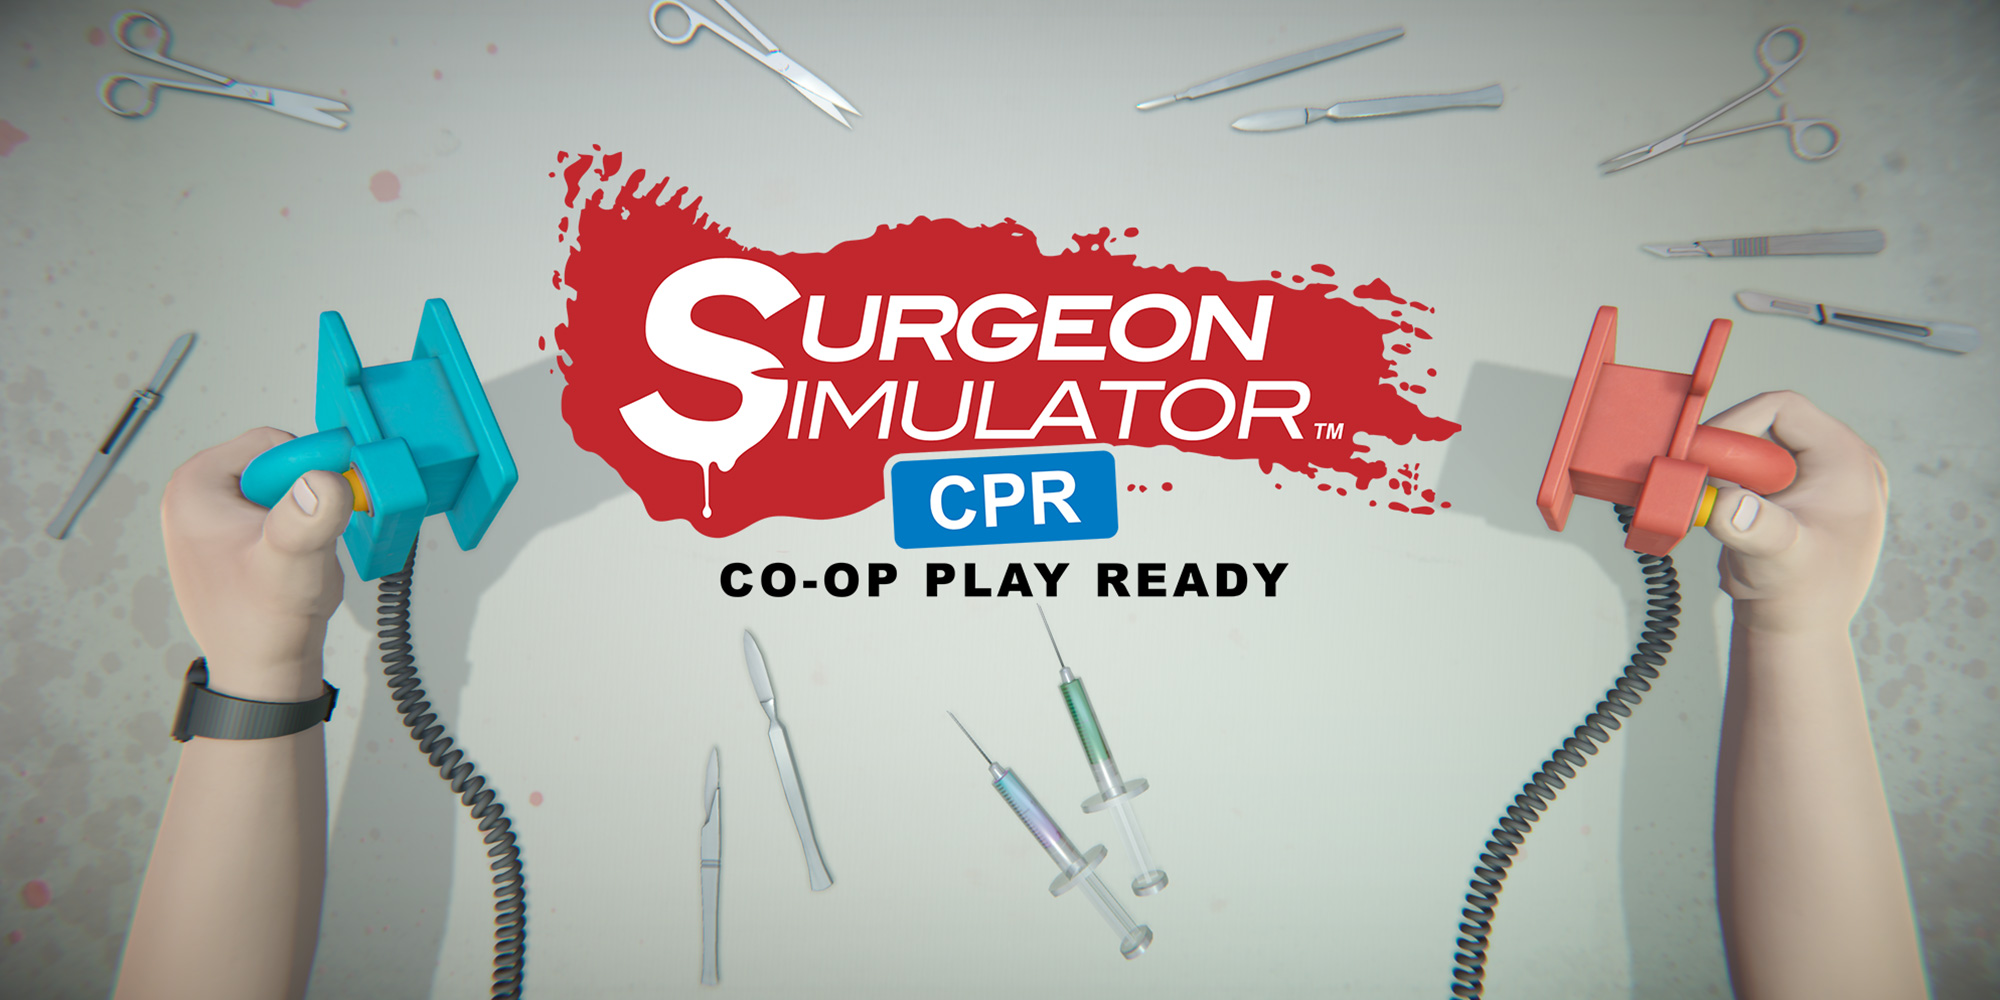 Cinco dicas para uma cirurgia de sucesso em Surgeon Simulator 2